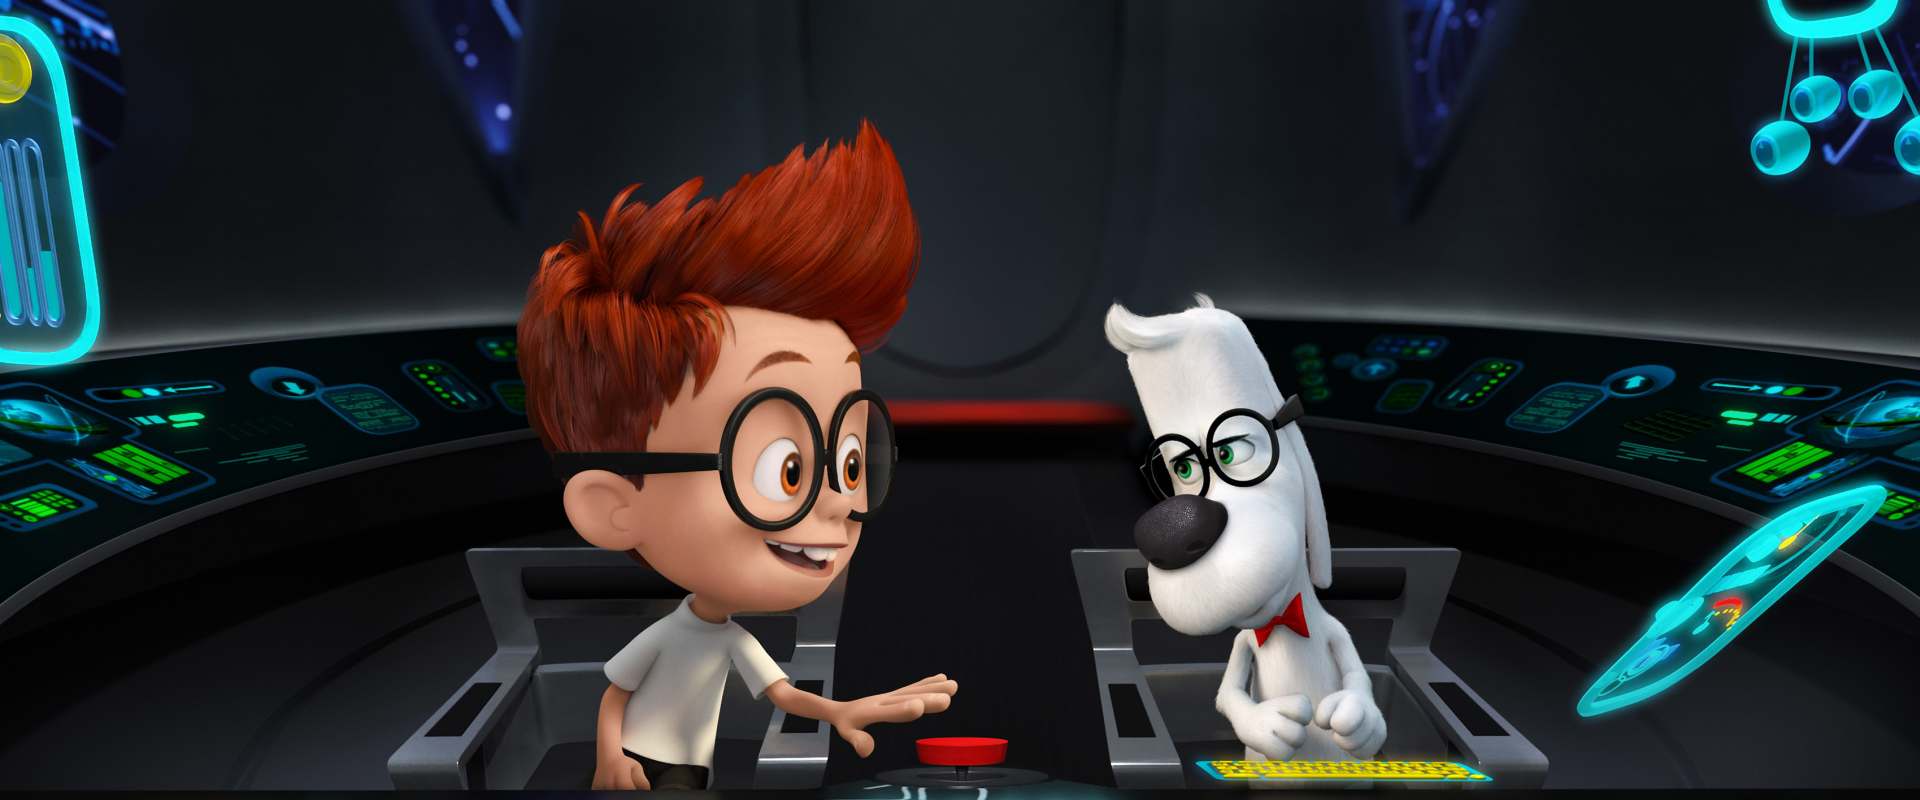 Mr. Peabody & Sherman background 2